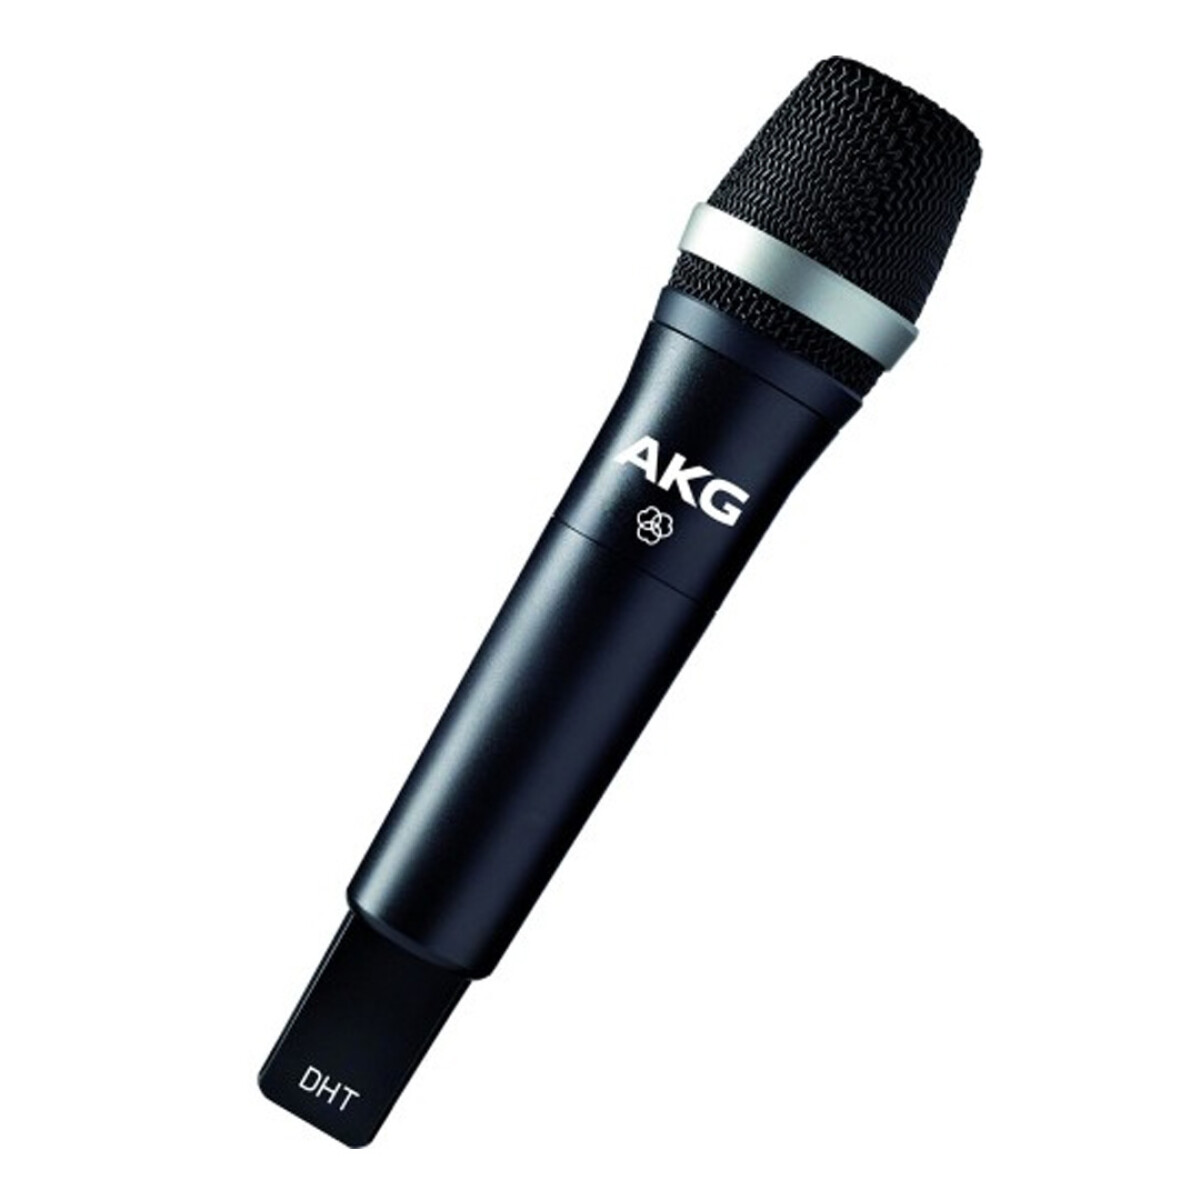 Microfono Inalambrico Akg Dhttetrad Digital Mano 